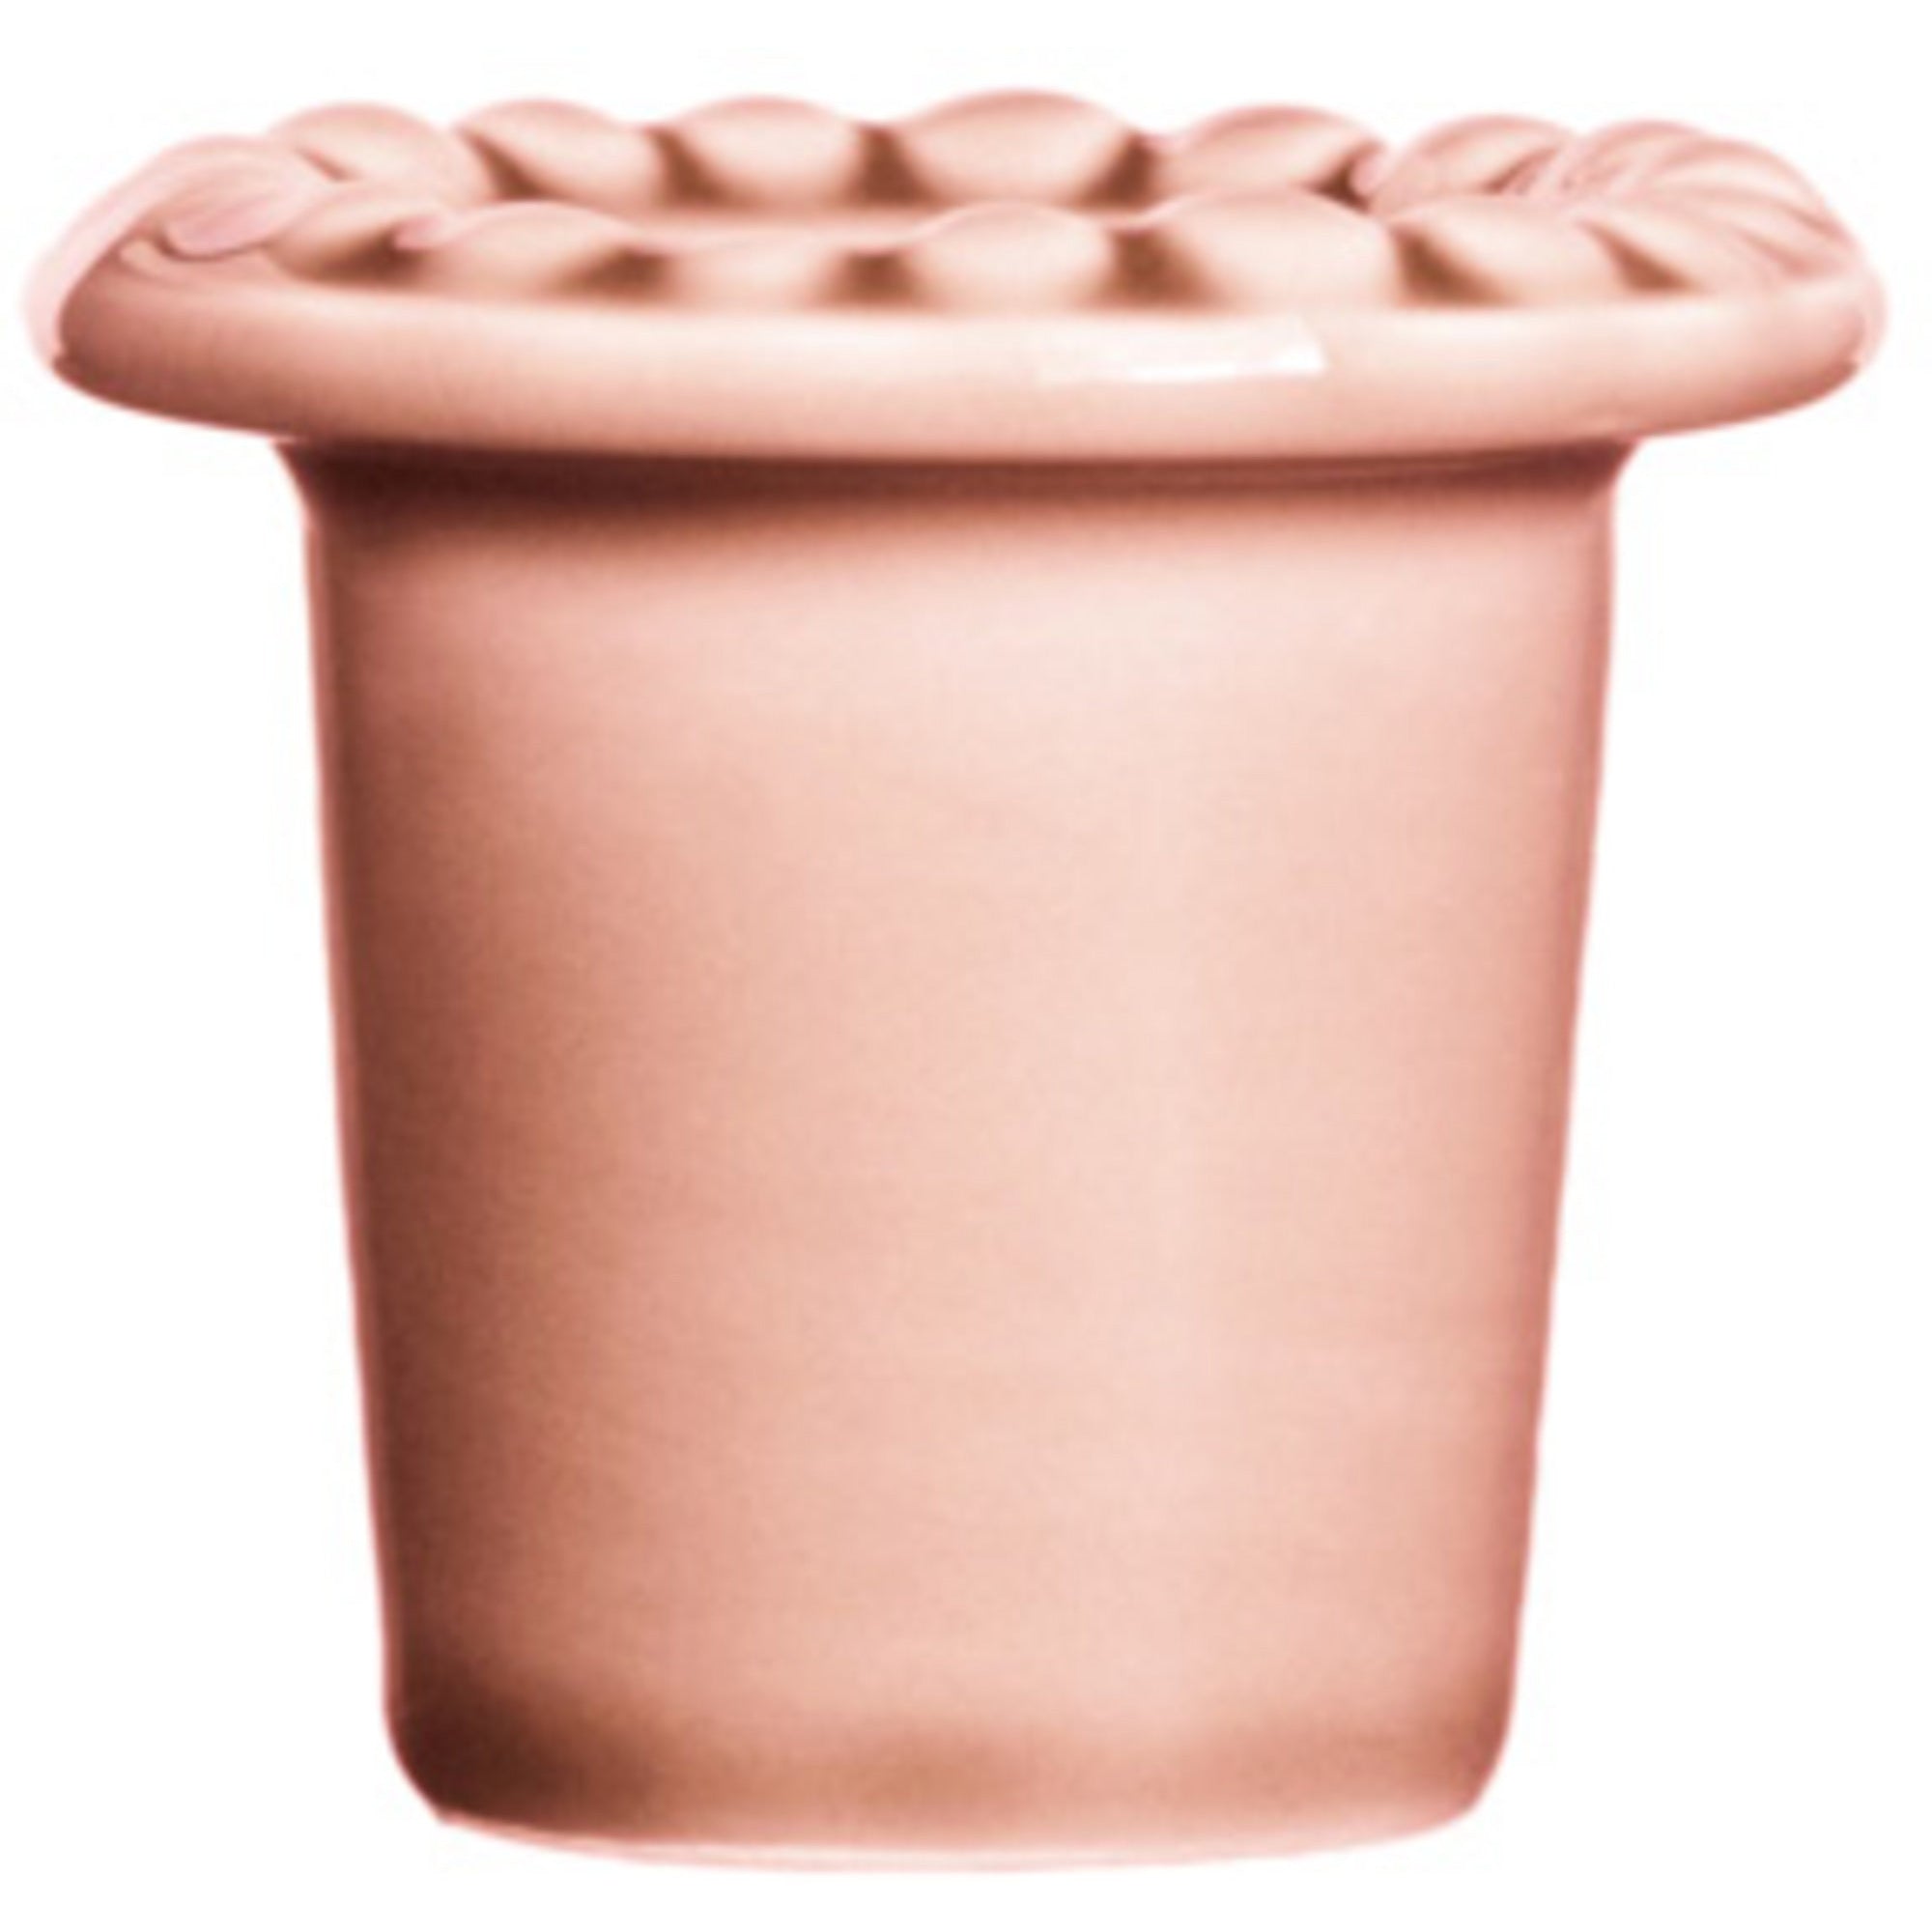 Køb PotteryJo Æggebæger Baby Pink | Æggebæger på Gozomo